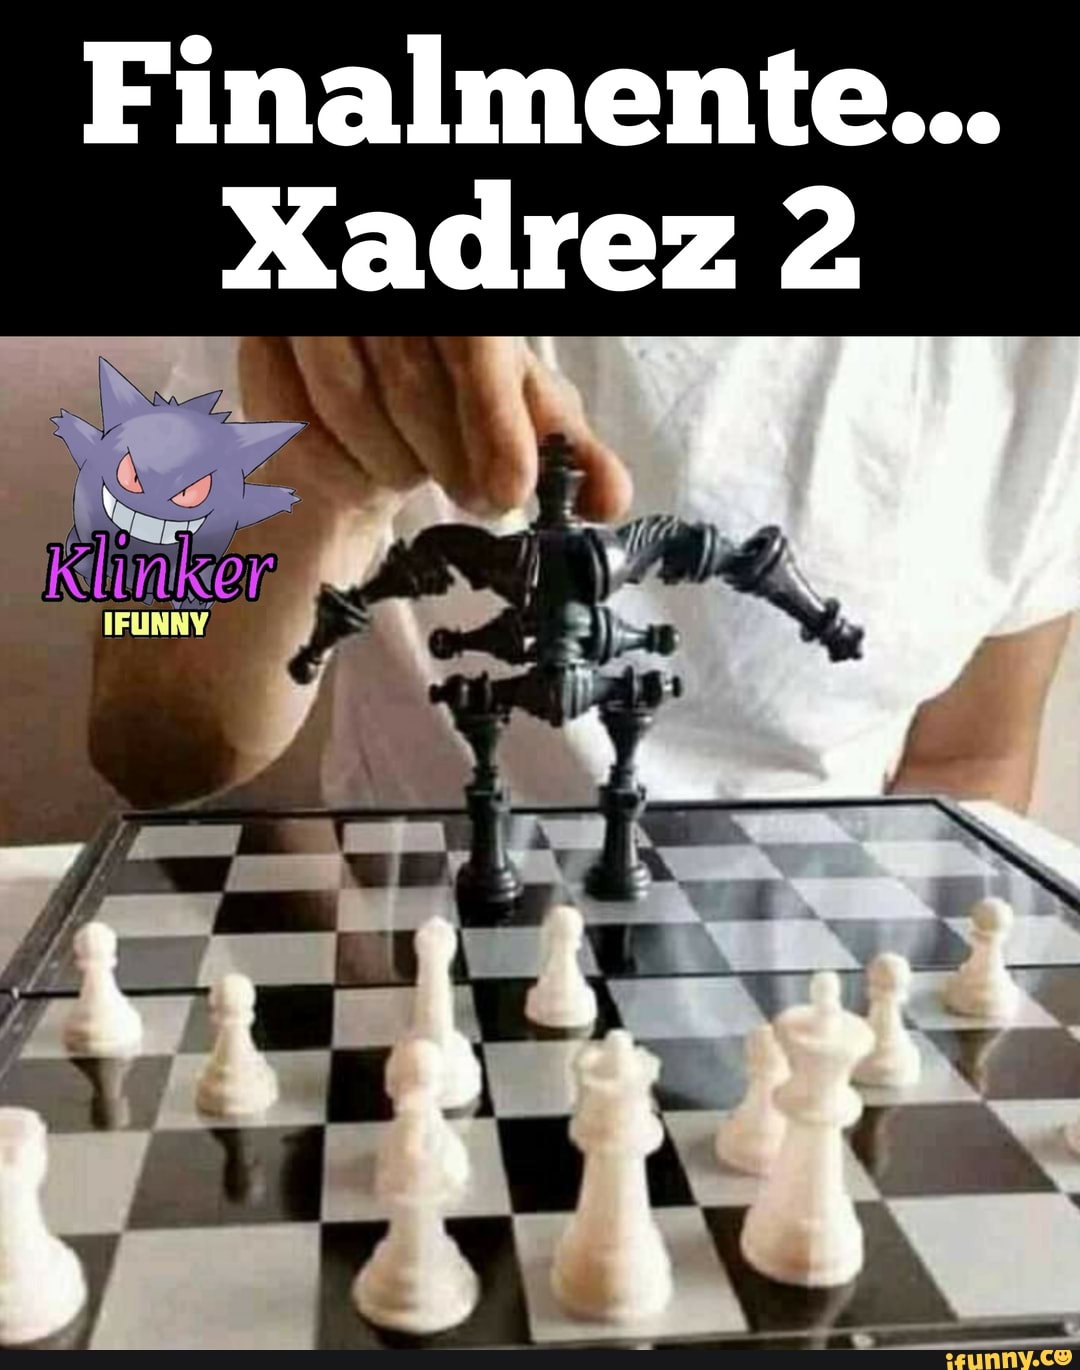 MEMES EM IMAGENS - Finalmente lançaram xadrez 2 